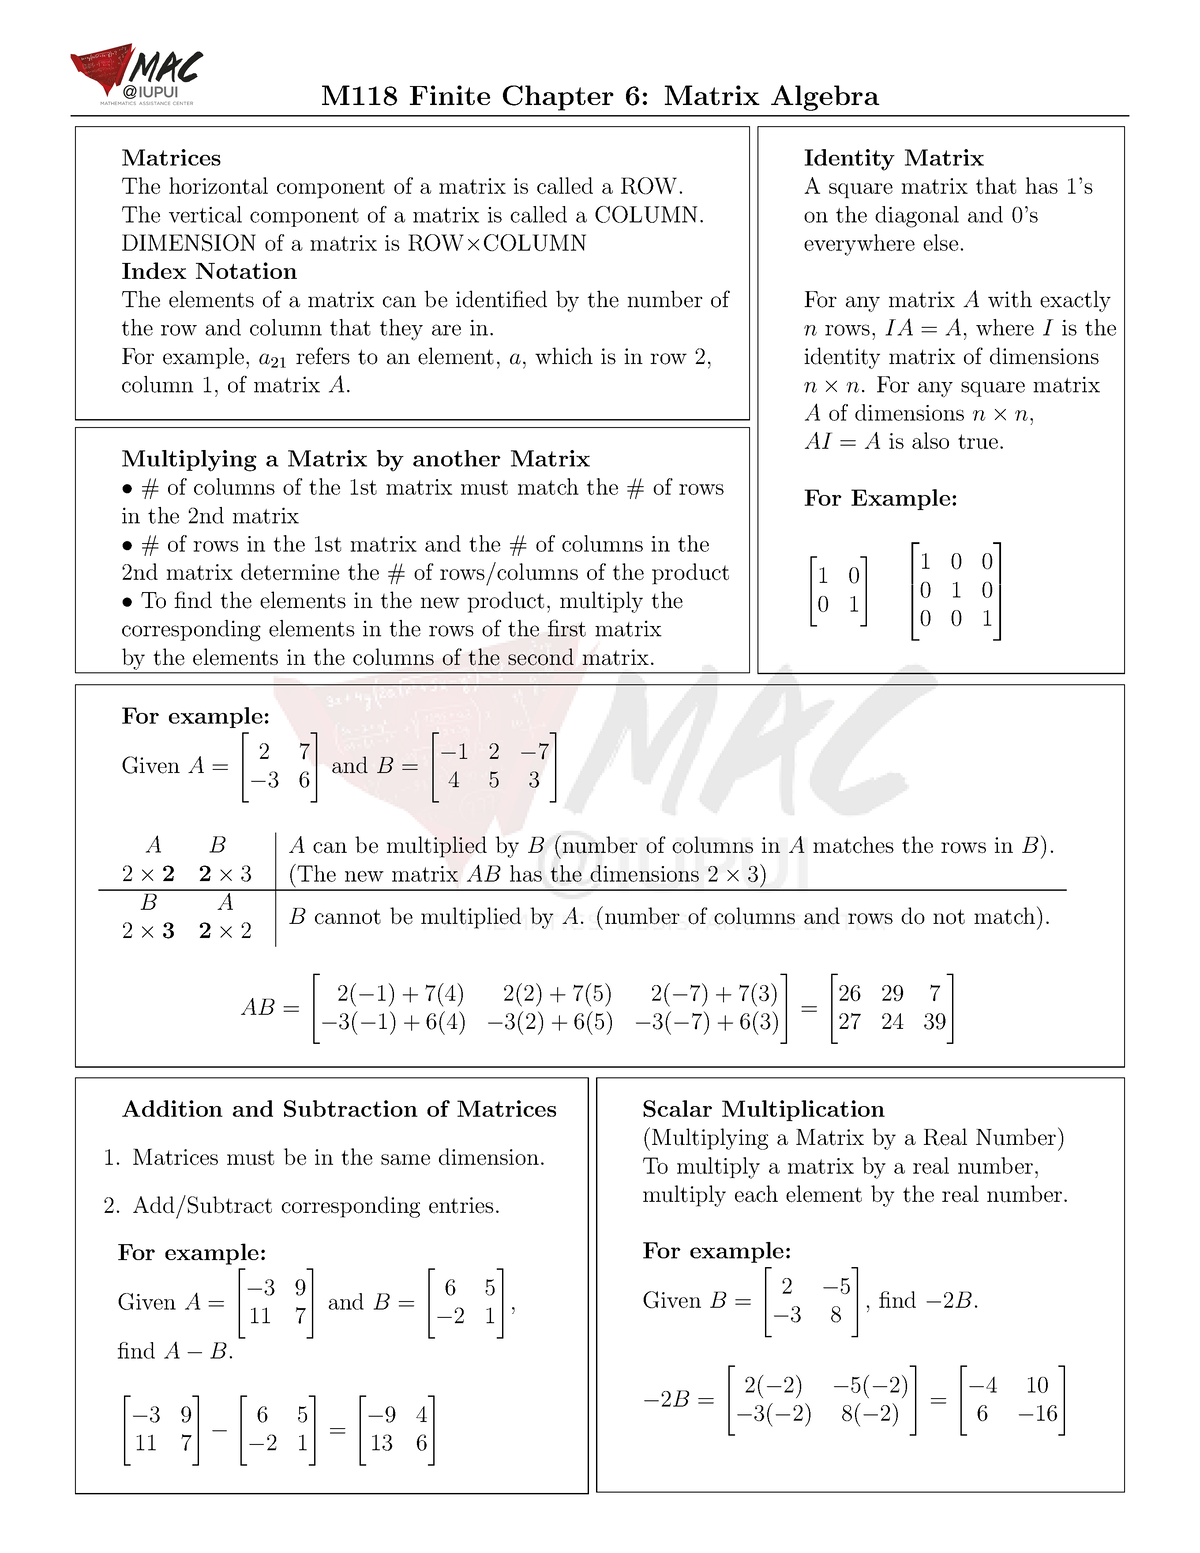 M118 Chapter 6 Matrix Algebra M118 Finite Chapter 6 Matrix Algebra Matrices The Horizontal 5921